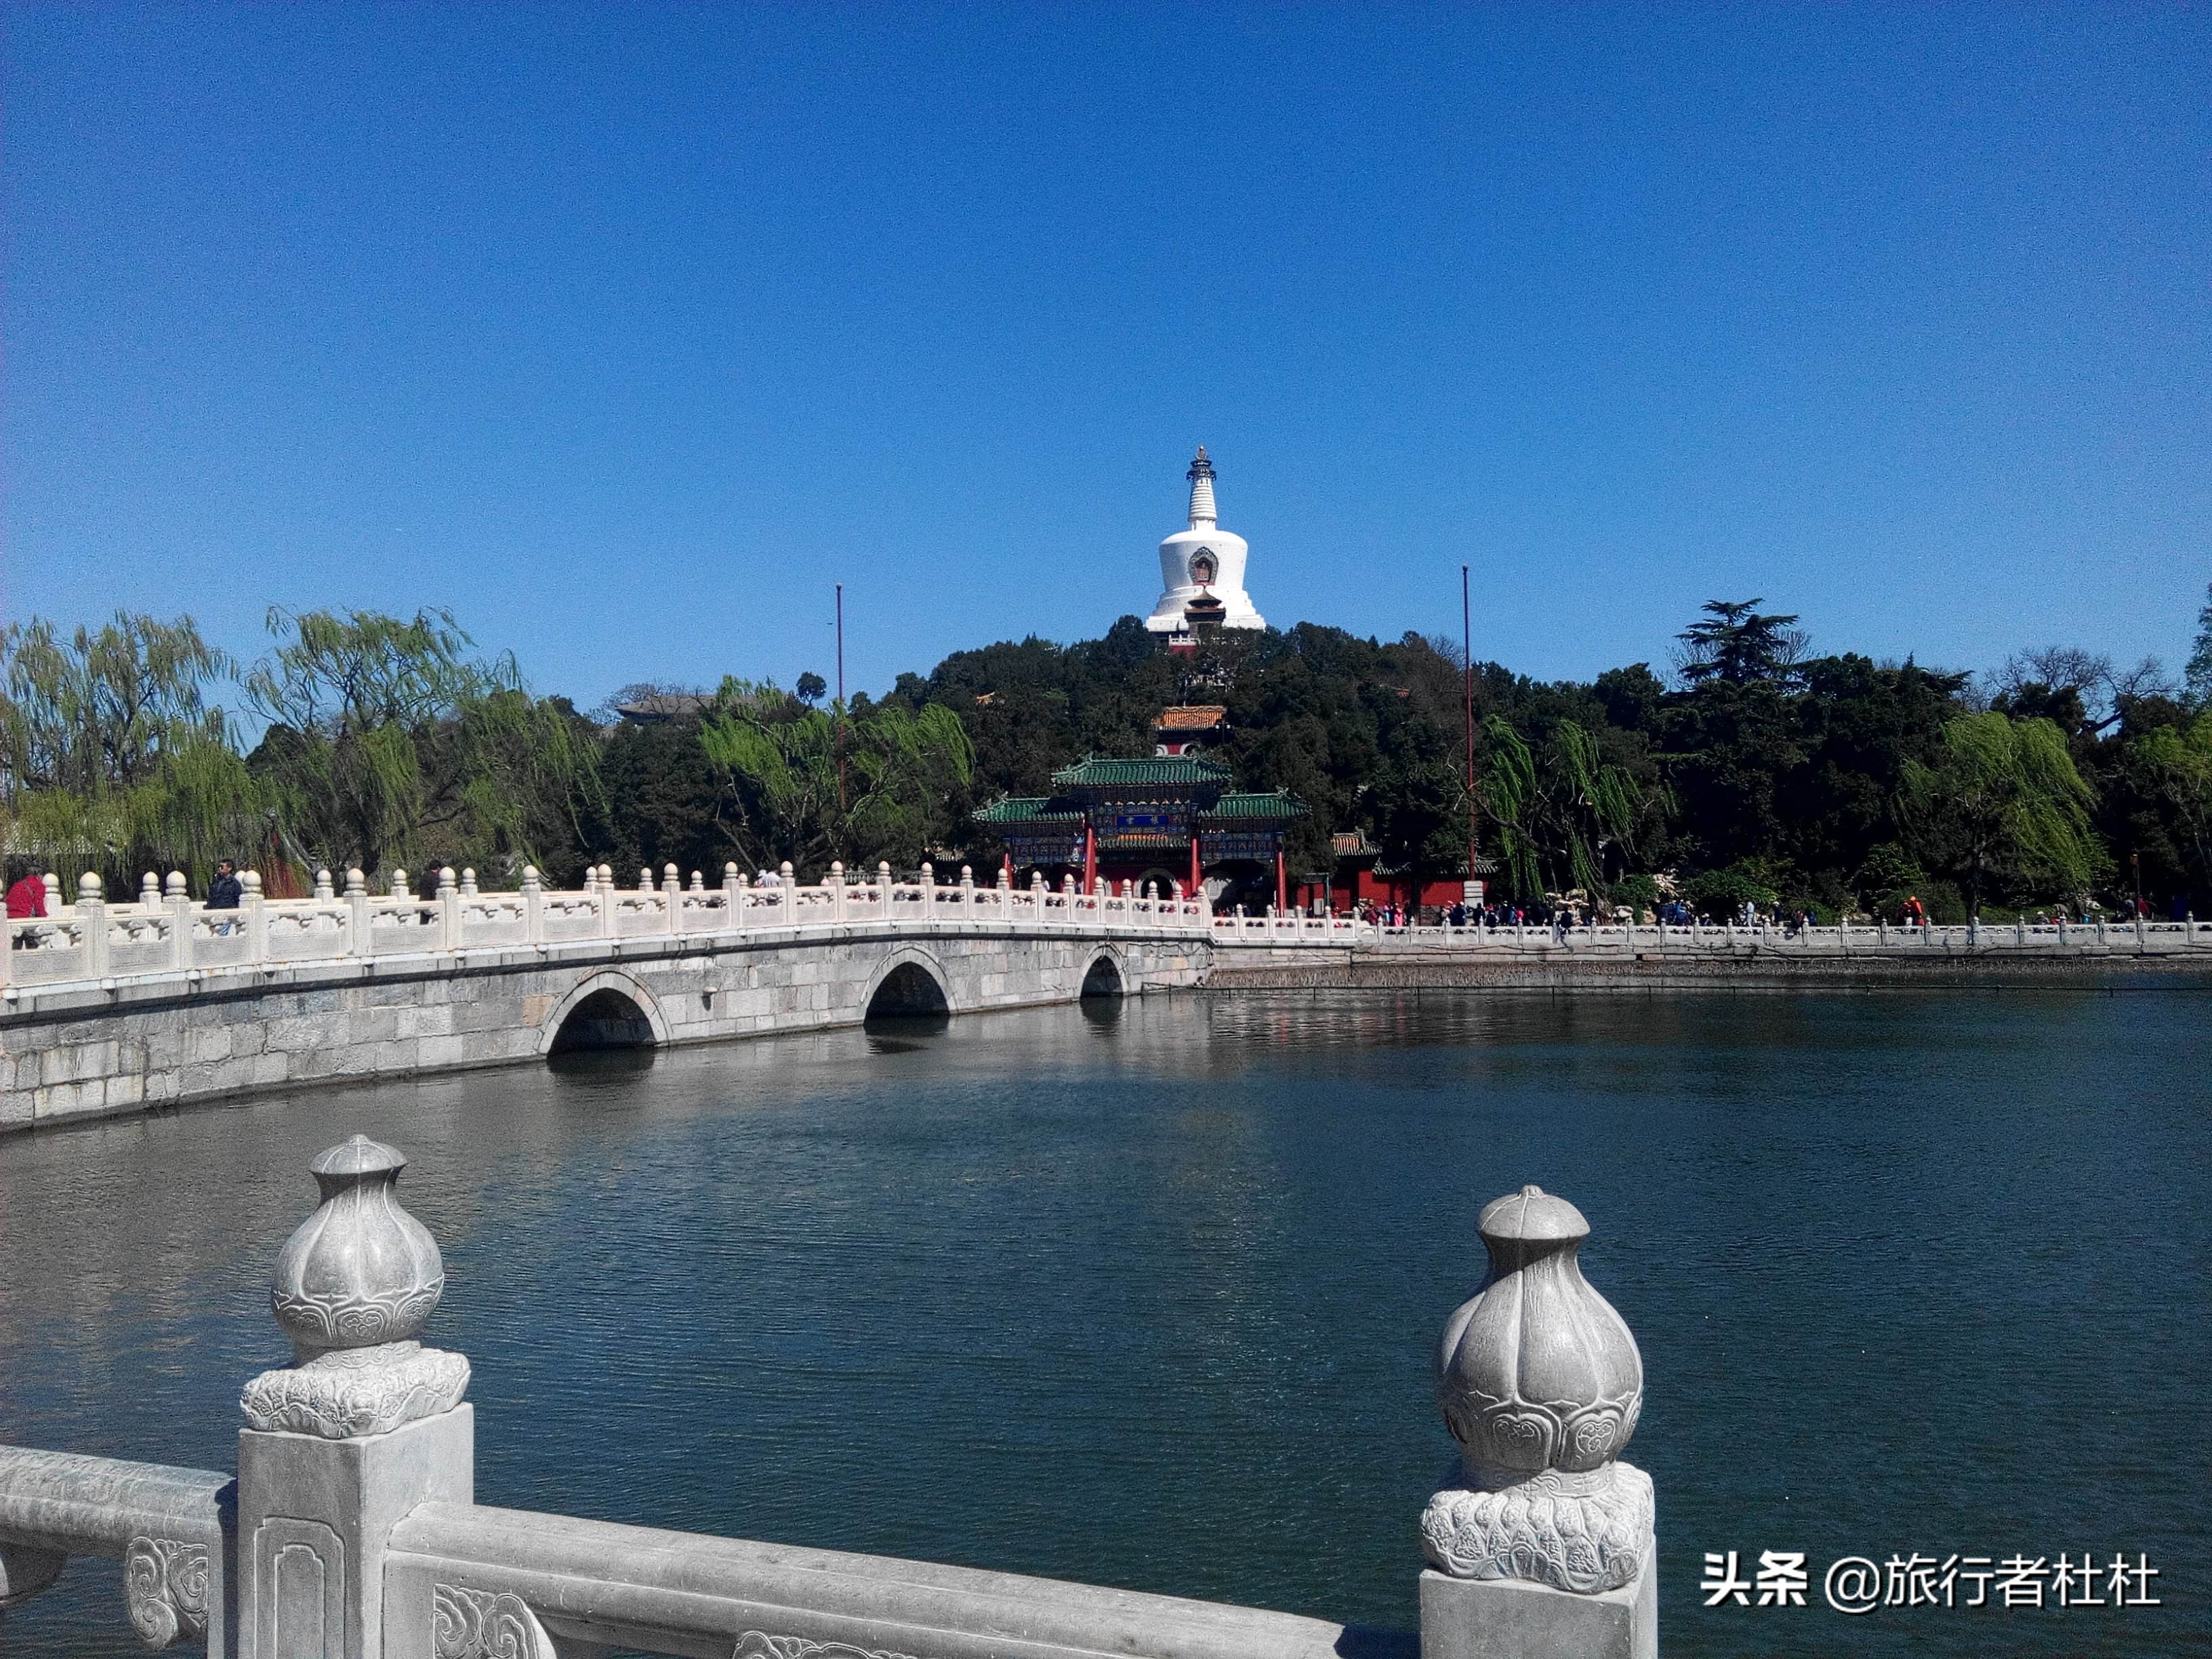 来最美旅行城市北京，要去哪些景点？为你推荐北京十大必游景点